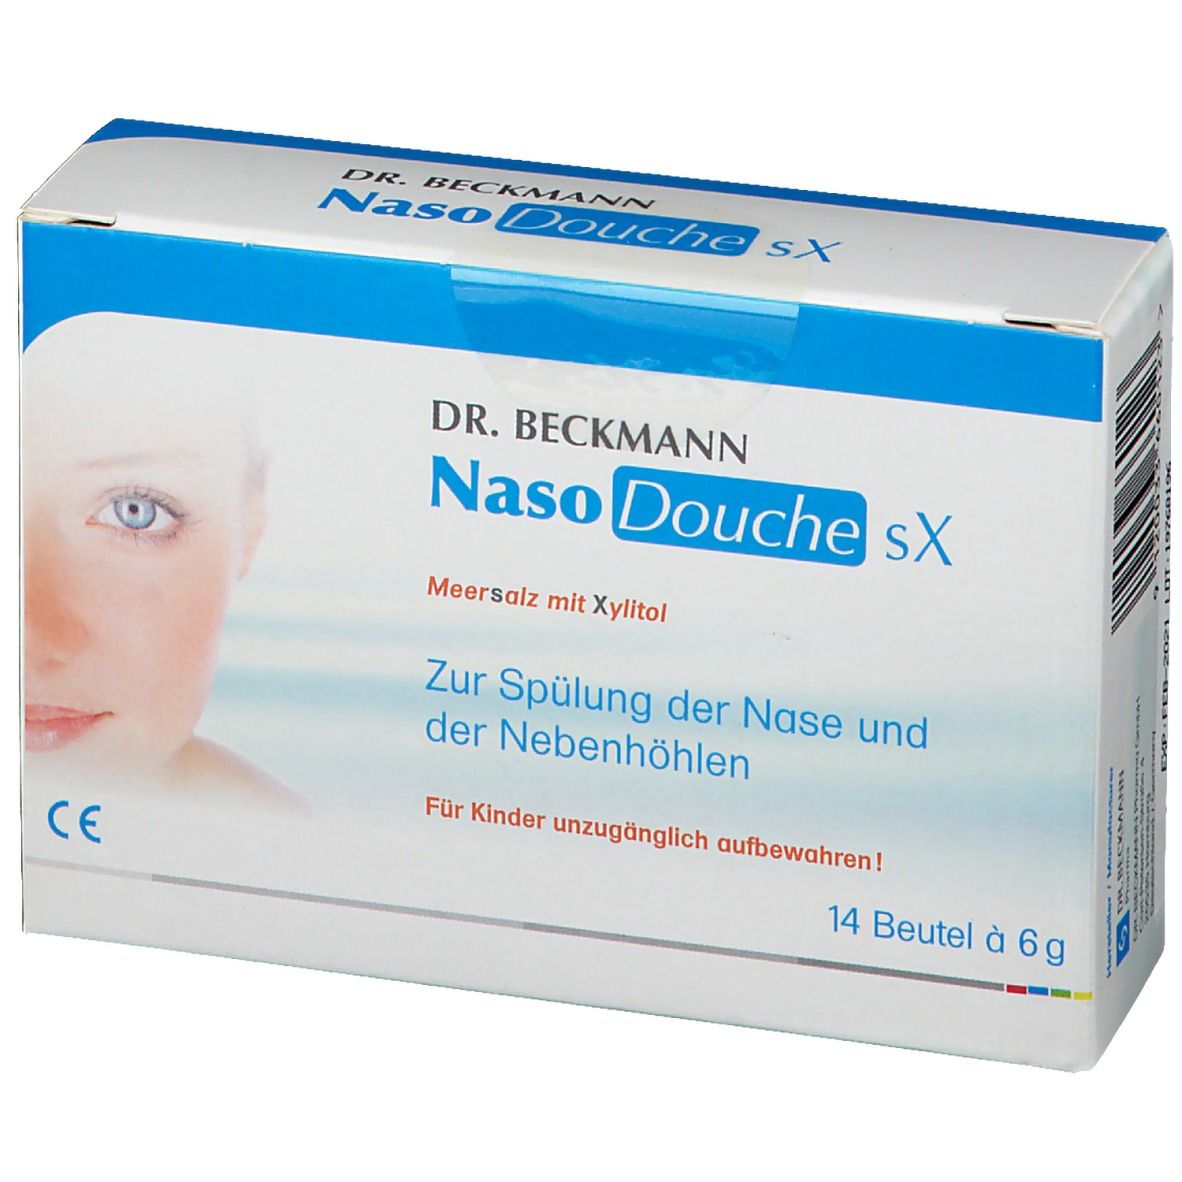 Dr. Beckmann NasoDouche sX